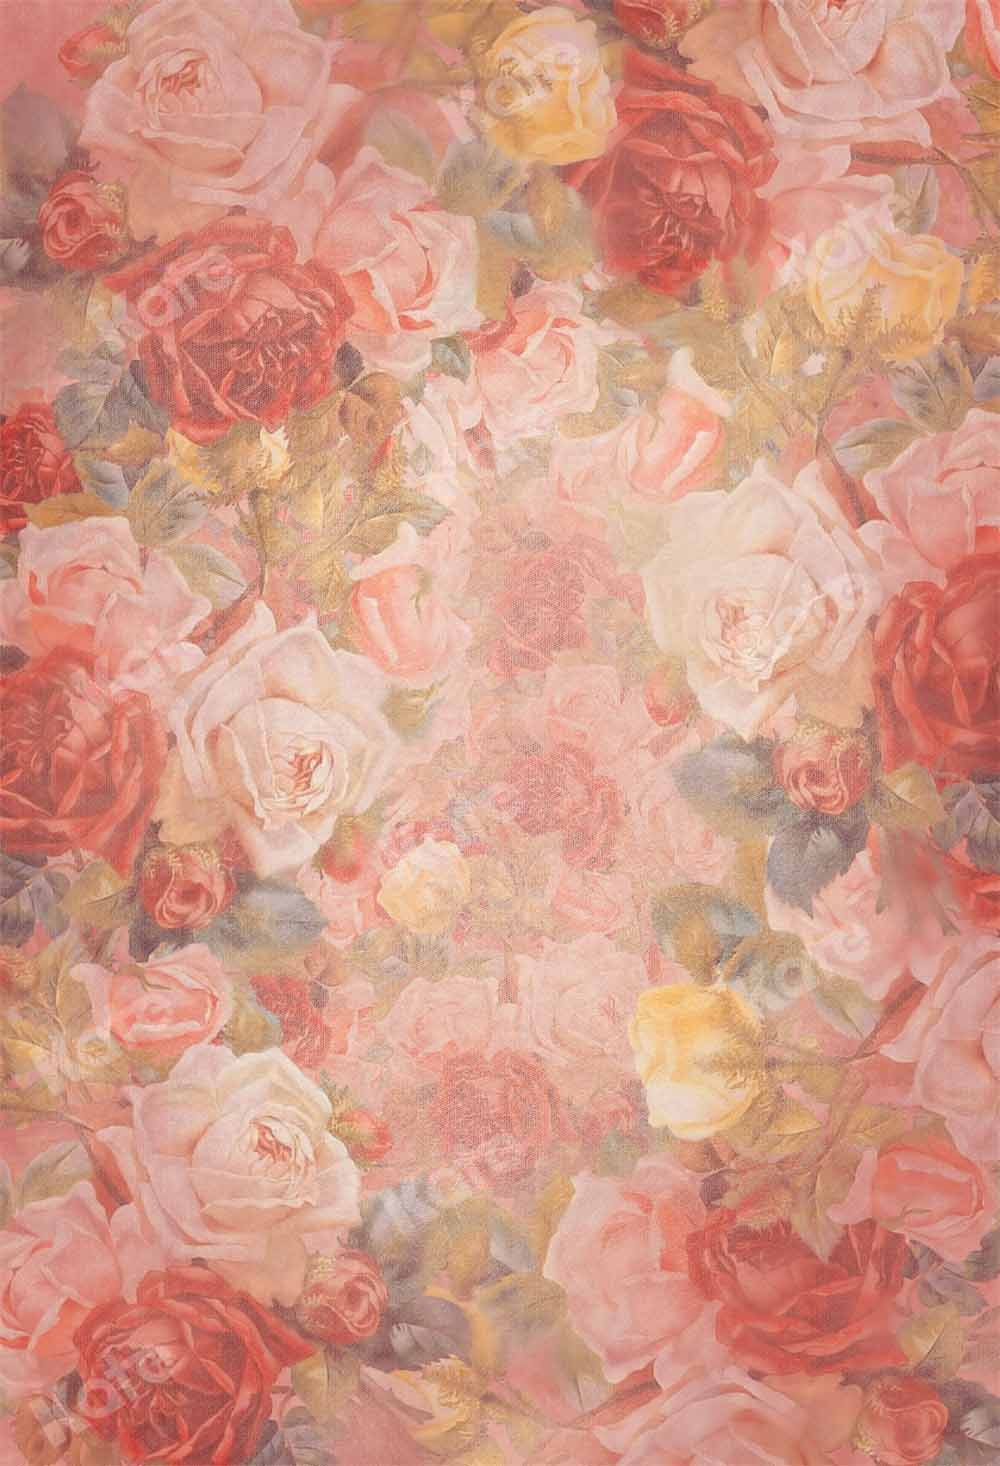 Super Sale-A Kate Valentinstag Textur Hintergrund Geburtstag Blumen von GQ